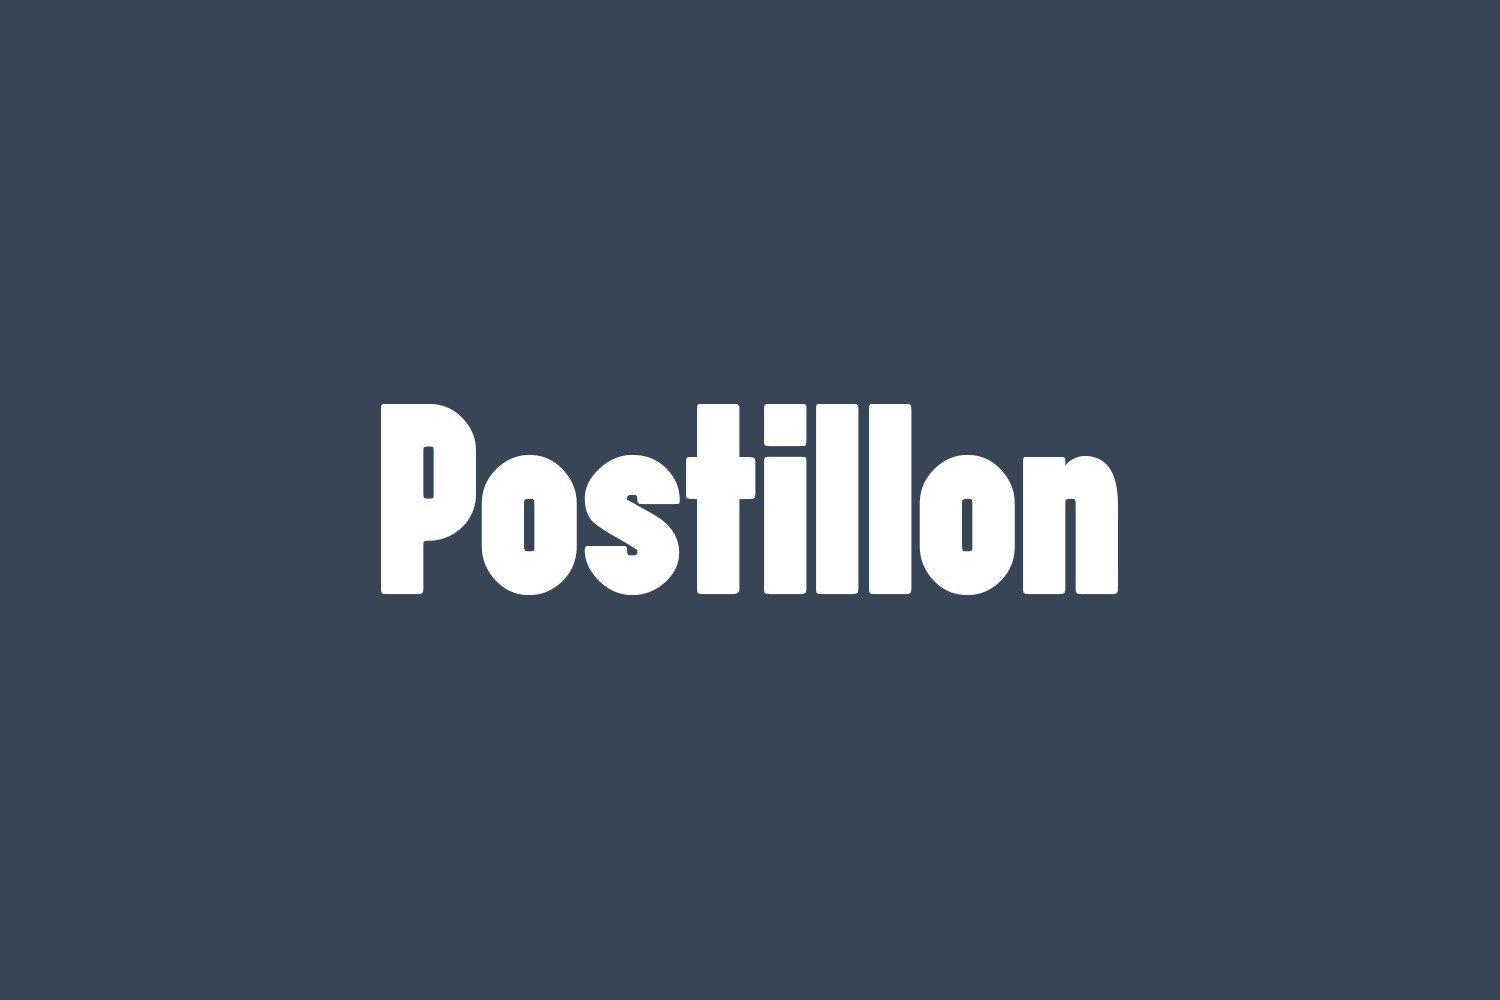 Postillon Free Font